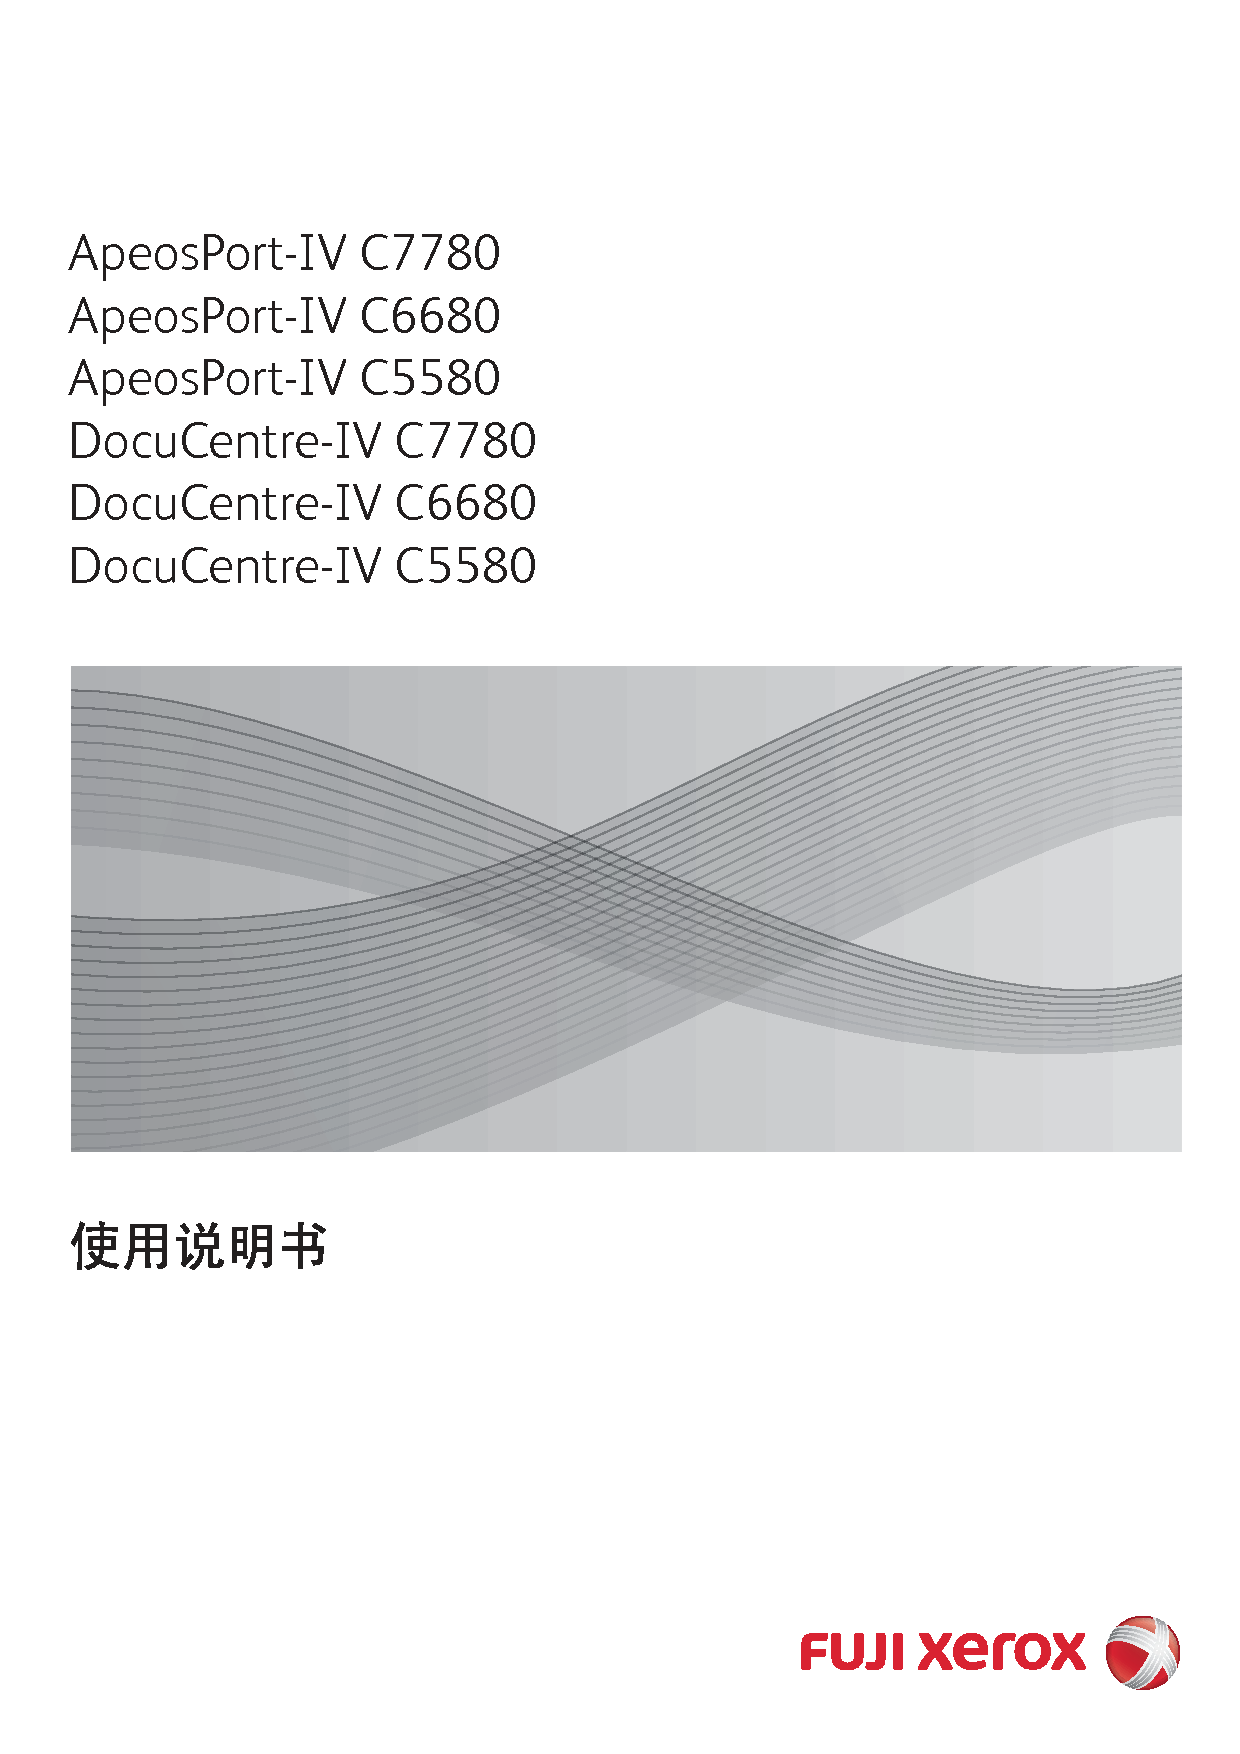 富士施乐 Fuji Xerox ApeosPort-IV C5580, DocuCentre-IV C5580 使用说明书 封面